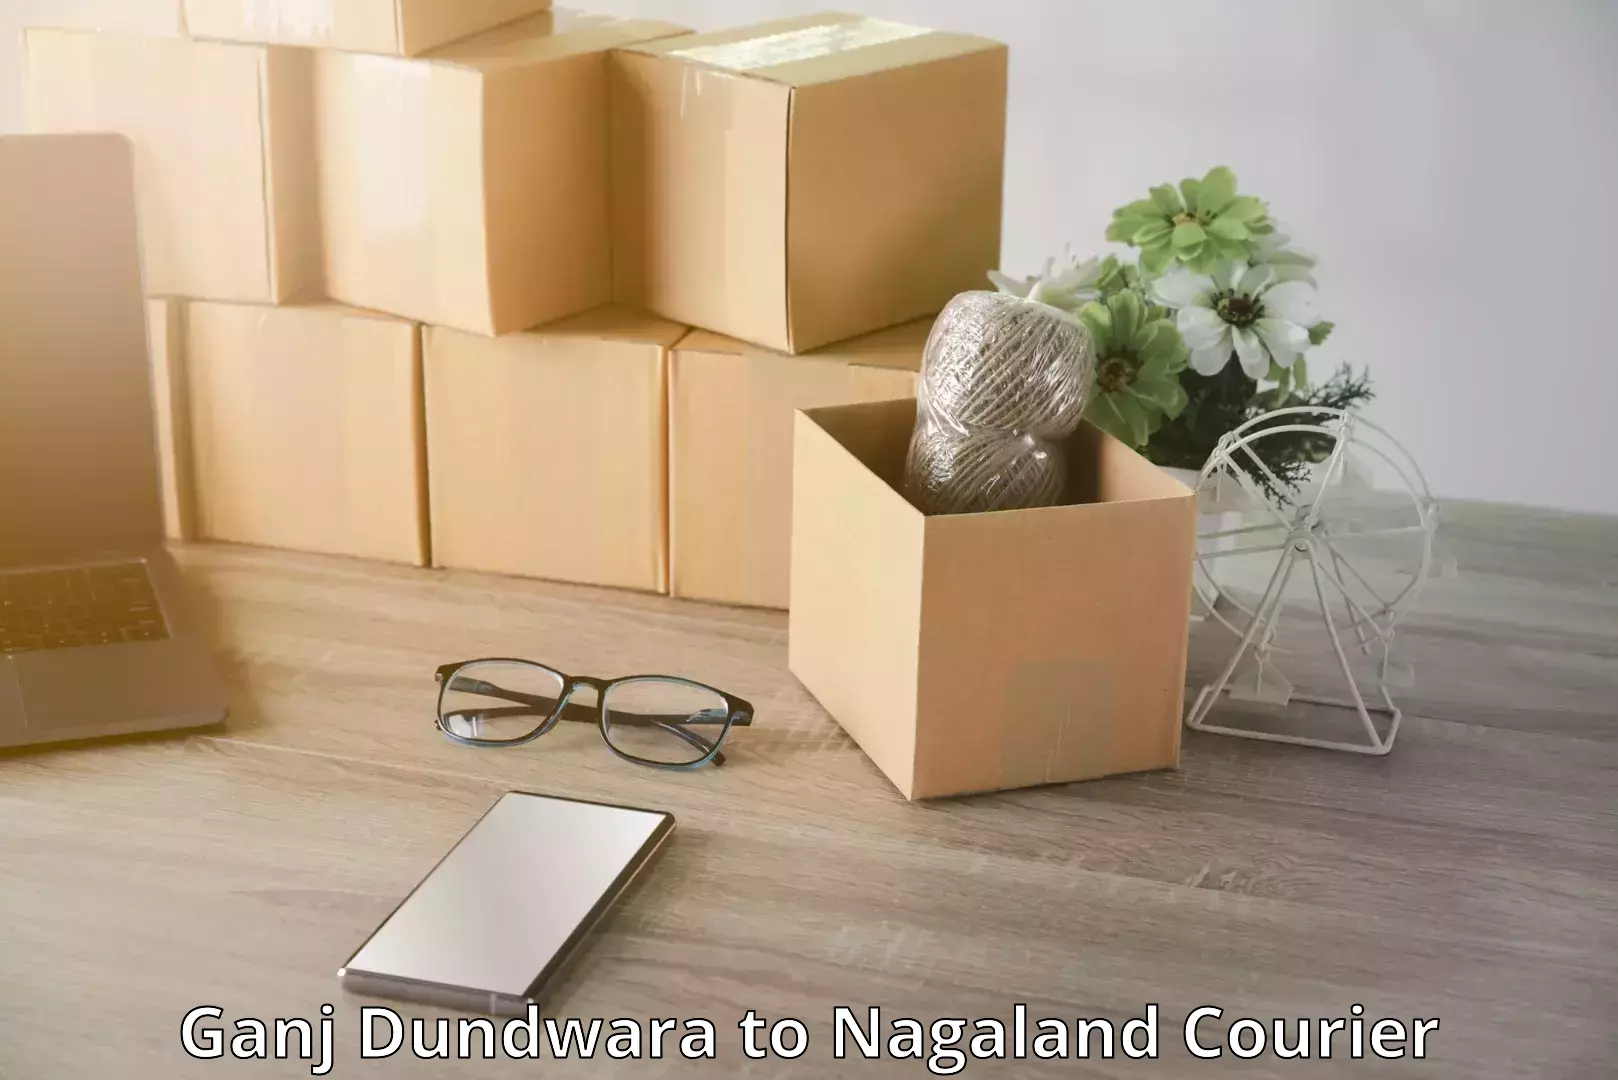 Baggage delivery scheduling Ganj Dundwara to Nagaland